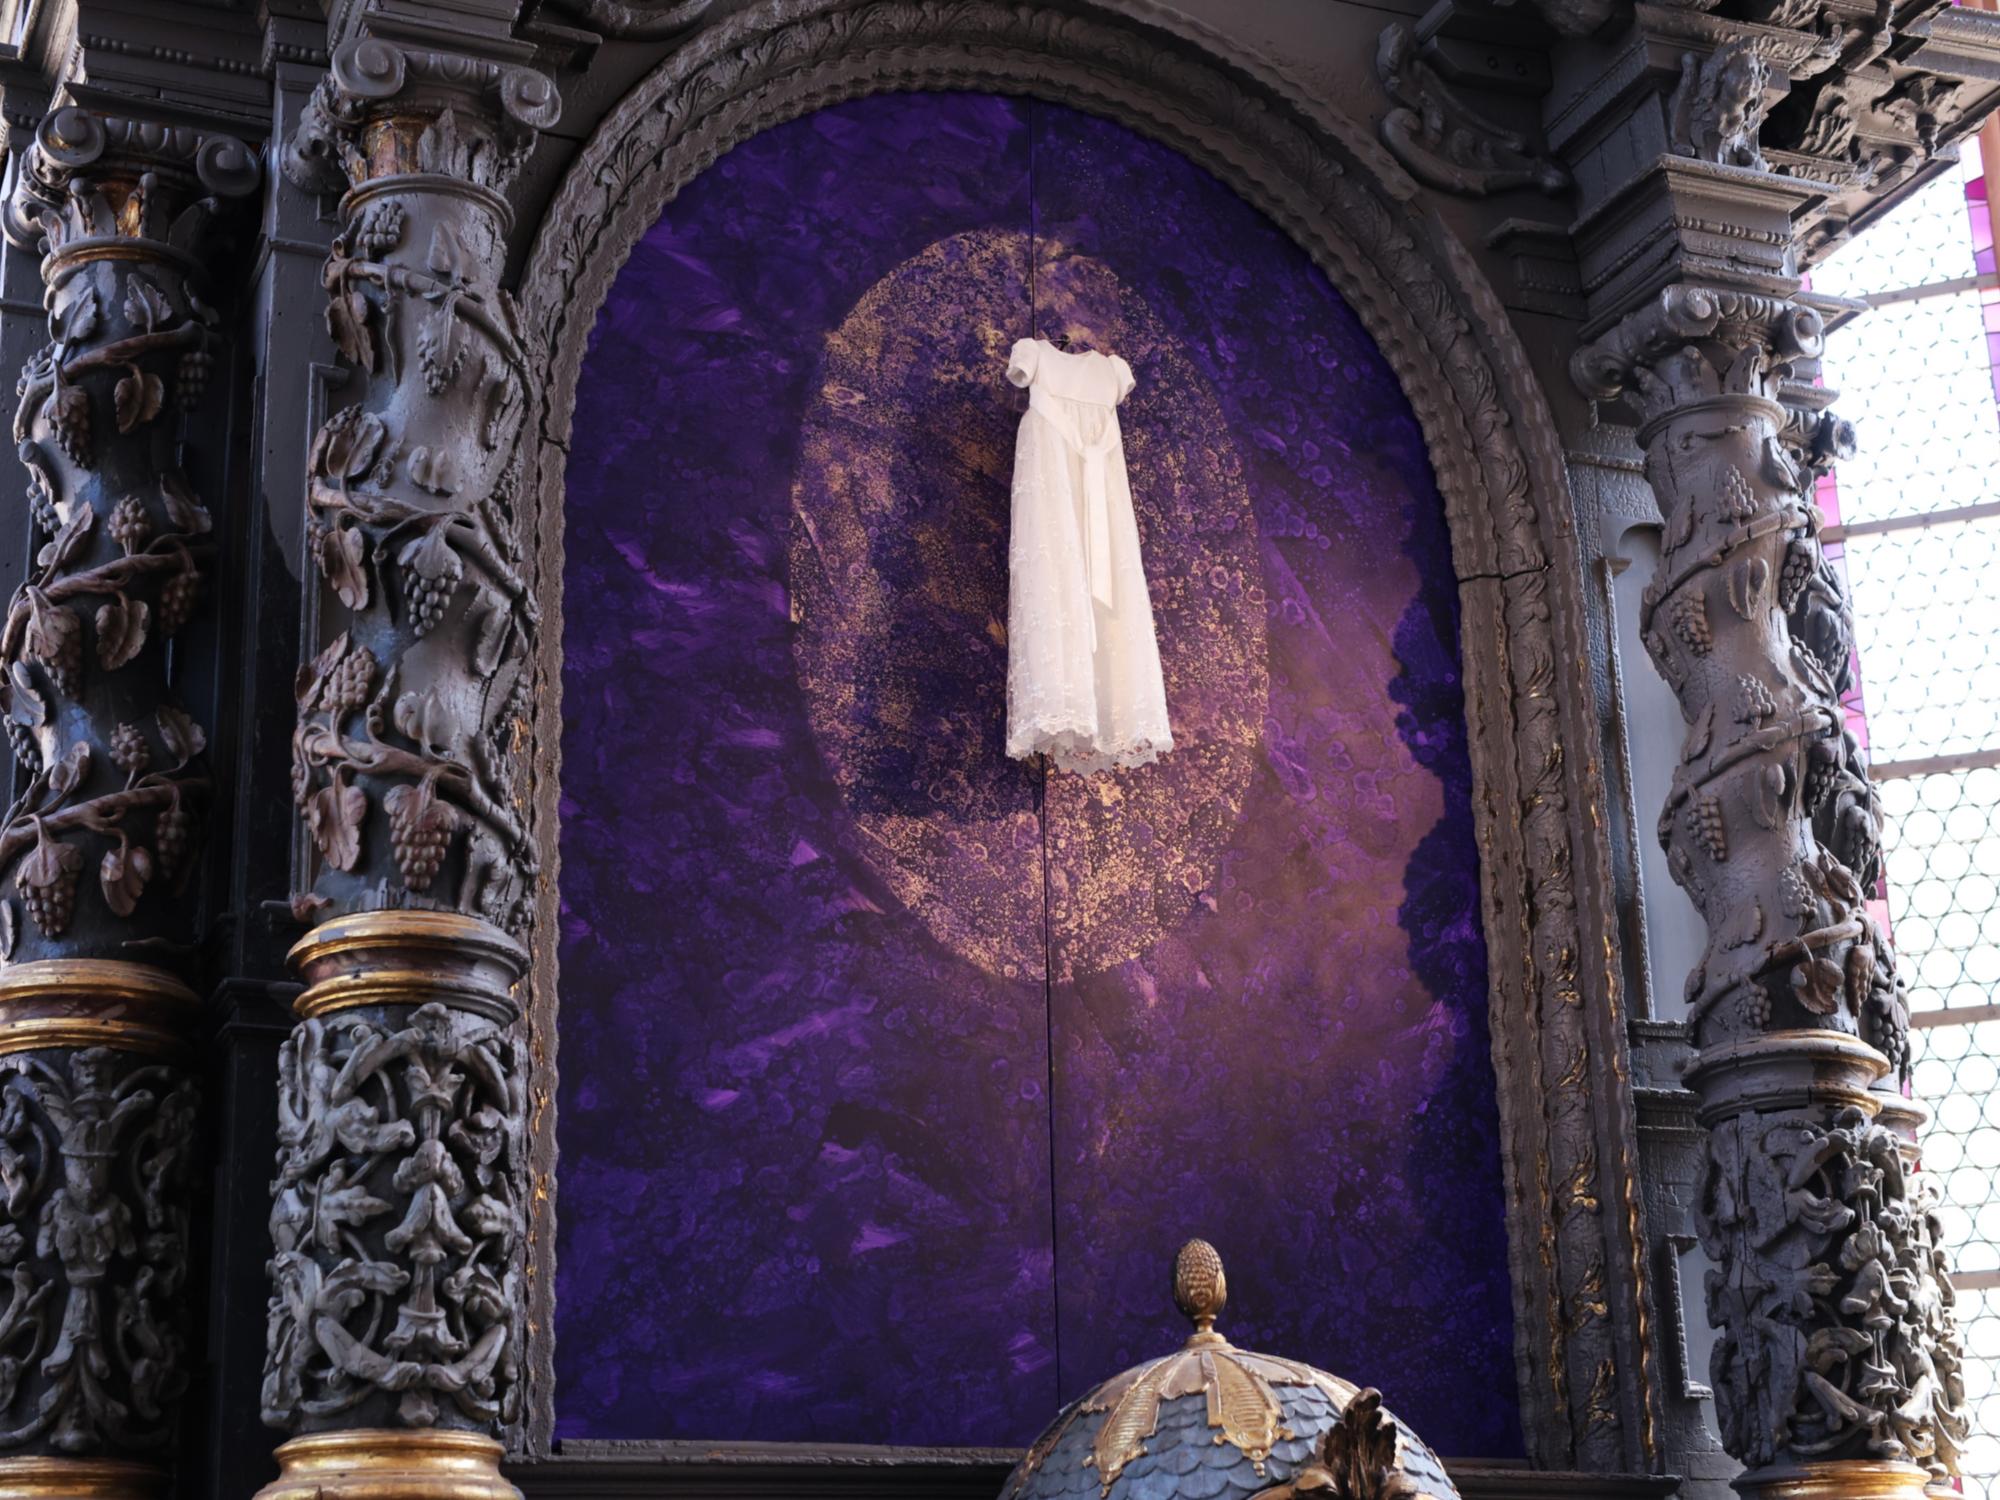 Uwe Appolds erstes Bild, das nun enthüllt wurde, widmet sich dem Thema der Taufe. Zum Glaubensweg gehört die Vorbereitung und das Fest, symbolisiert mit den Farben Violett und Gold.